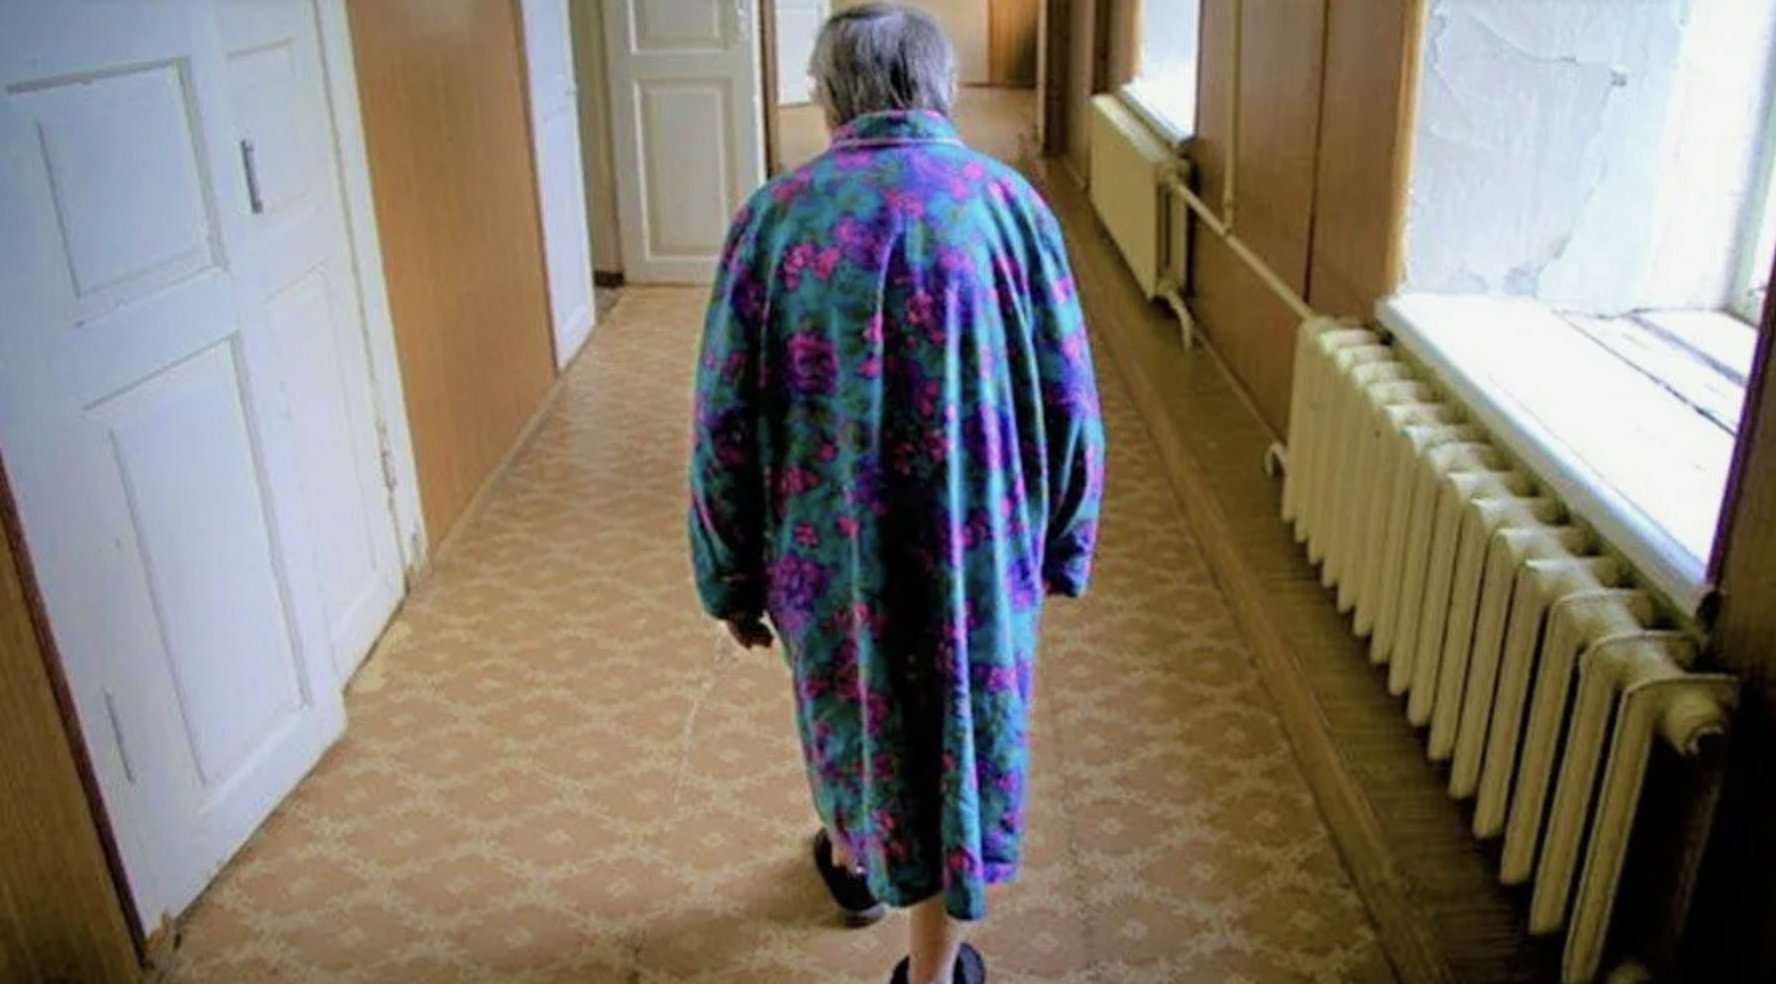 Vovó caminha pelo corredor | Fonte: Shutterstock